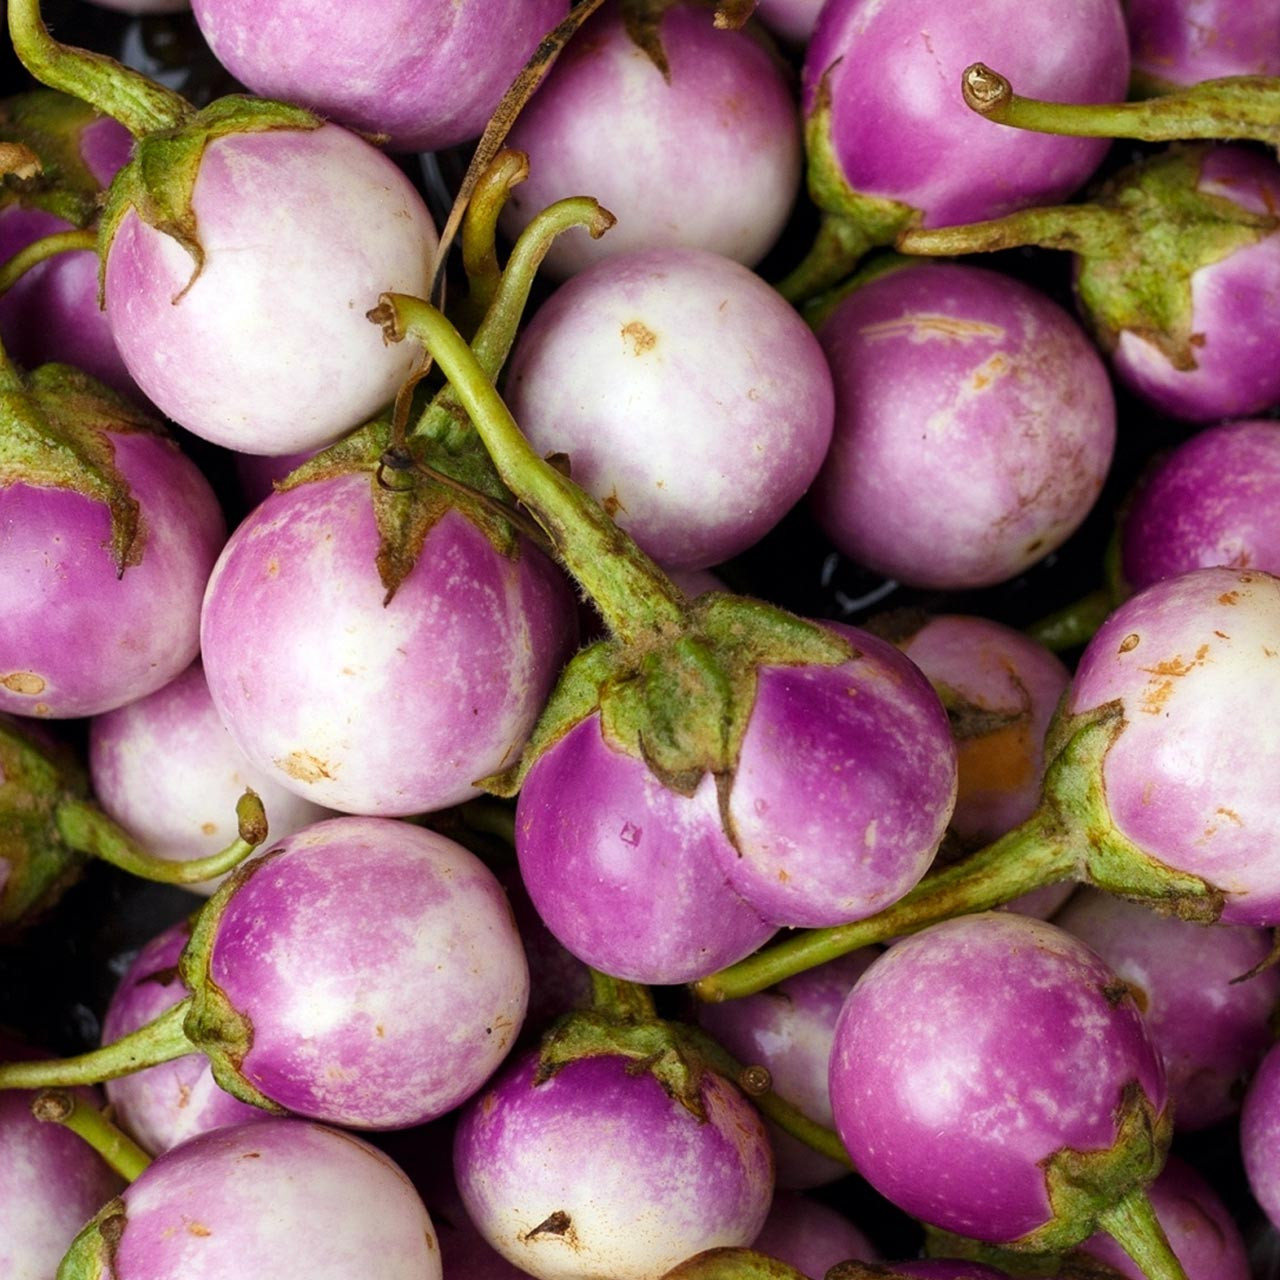 Rosa Bianca Eggplant (Solanum melongena)